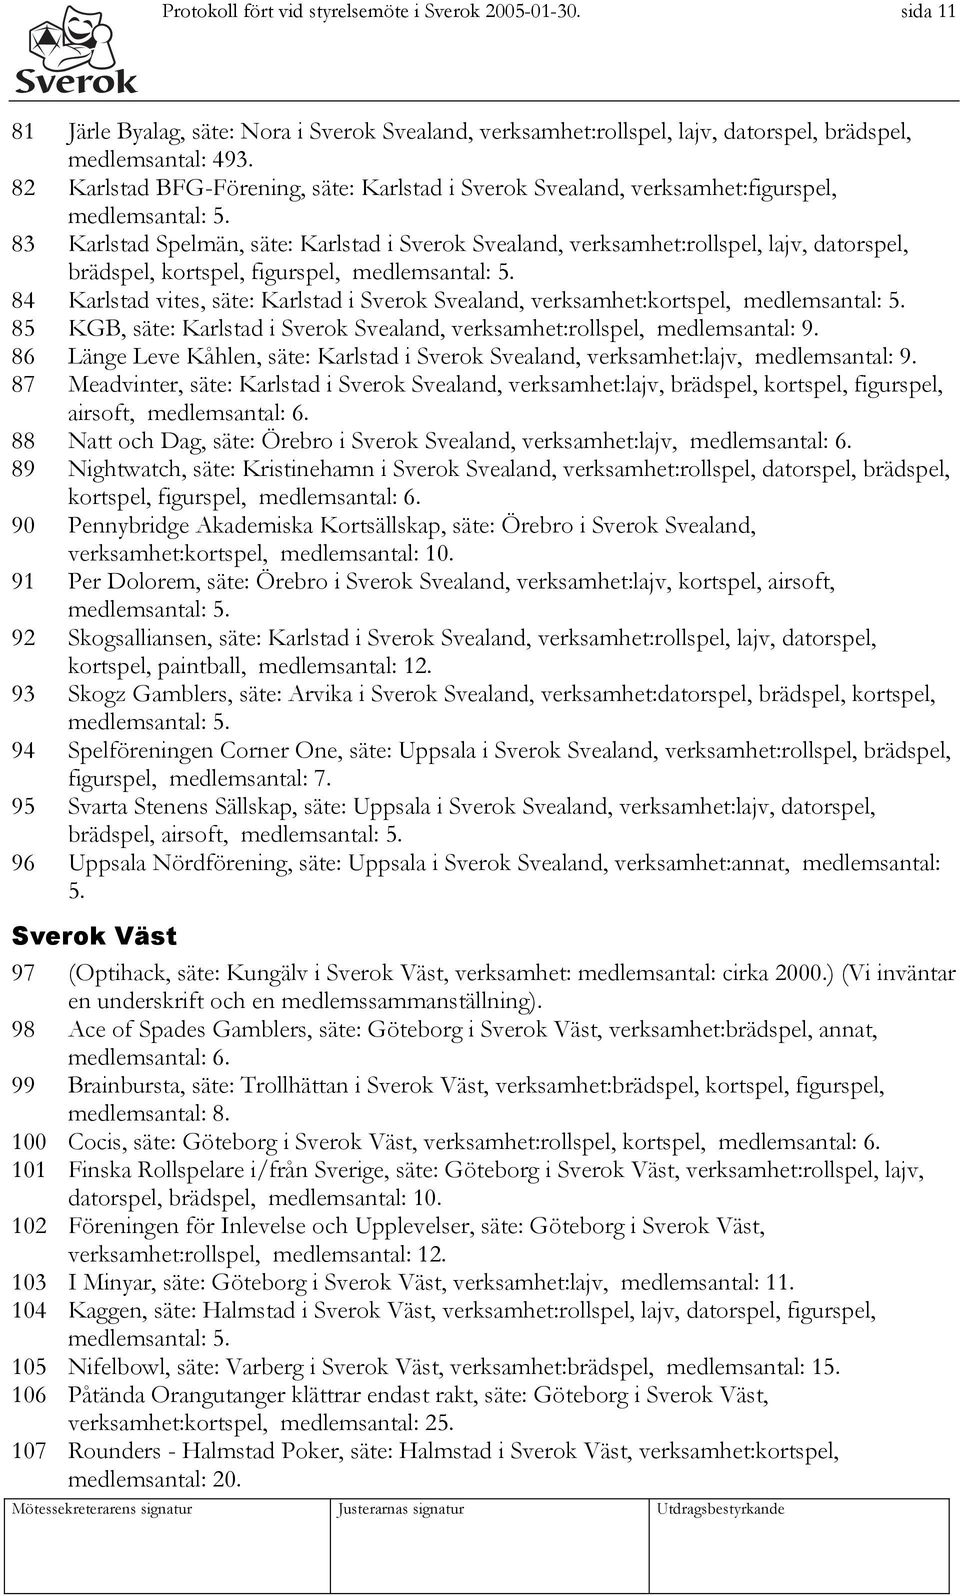 83 Karlstad Spelmän, säte: Karlstad i Sverok Svealand, verksamhet:rollspel, lajv, datorspel, brädspel, kortspel, figurspel, medlemsantal: 5.